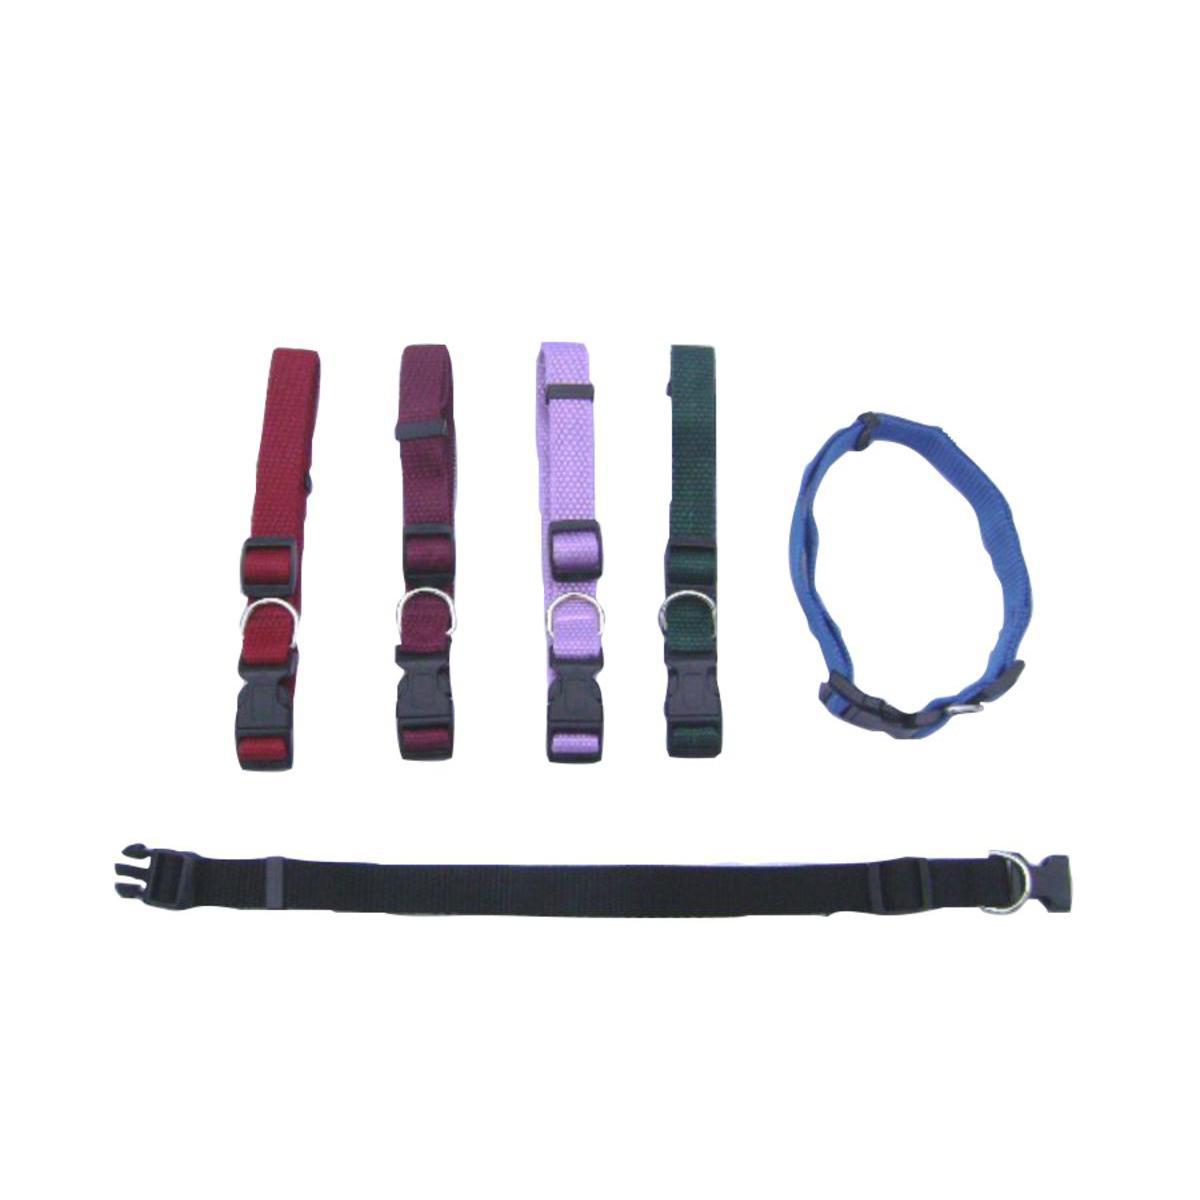 Collier réglable - Nylon - 2 x 32 à 51 cm - Noir, violet, vert, rouge et bleu